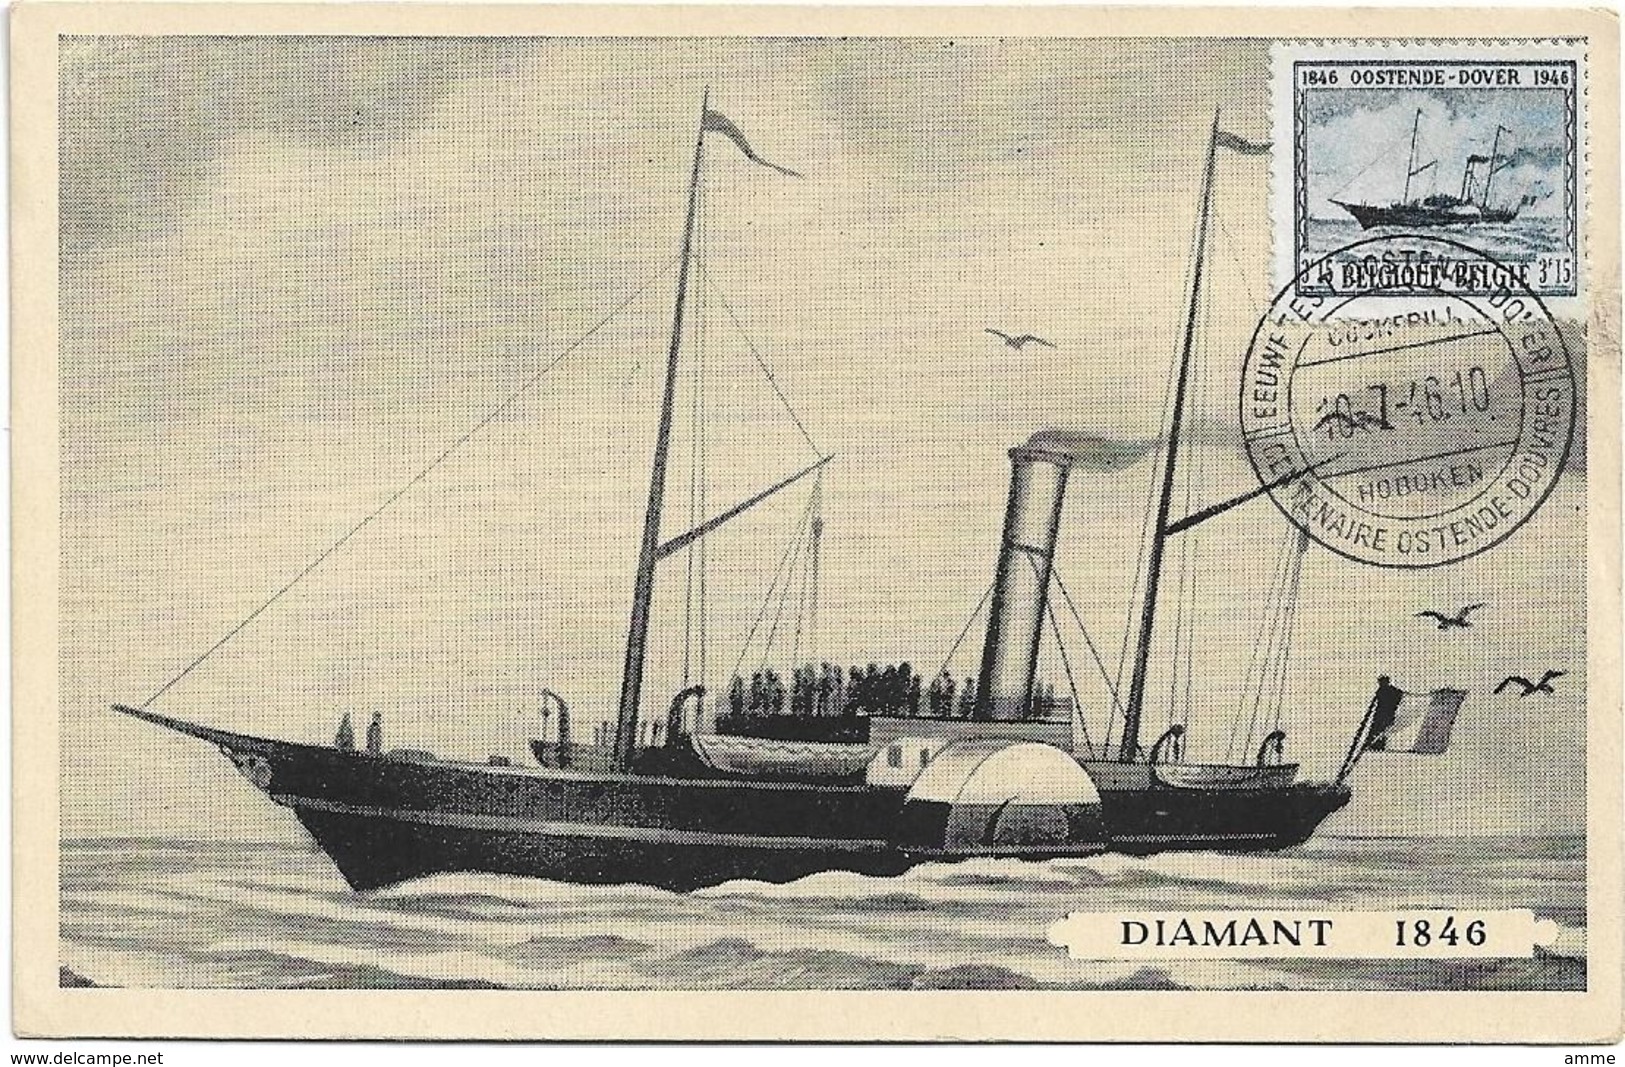 Oostende  *  Eeuwfeest - Centenaire Oostende - Dover 1946  ( Diamant 1846 ) - Liner Cards